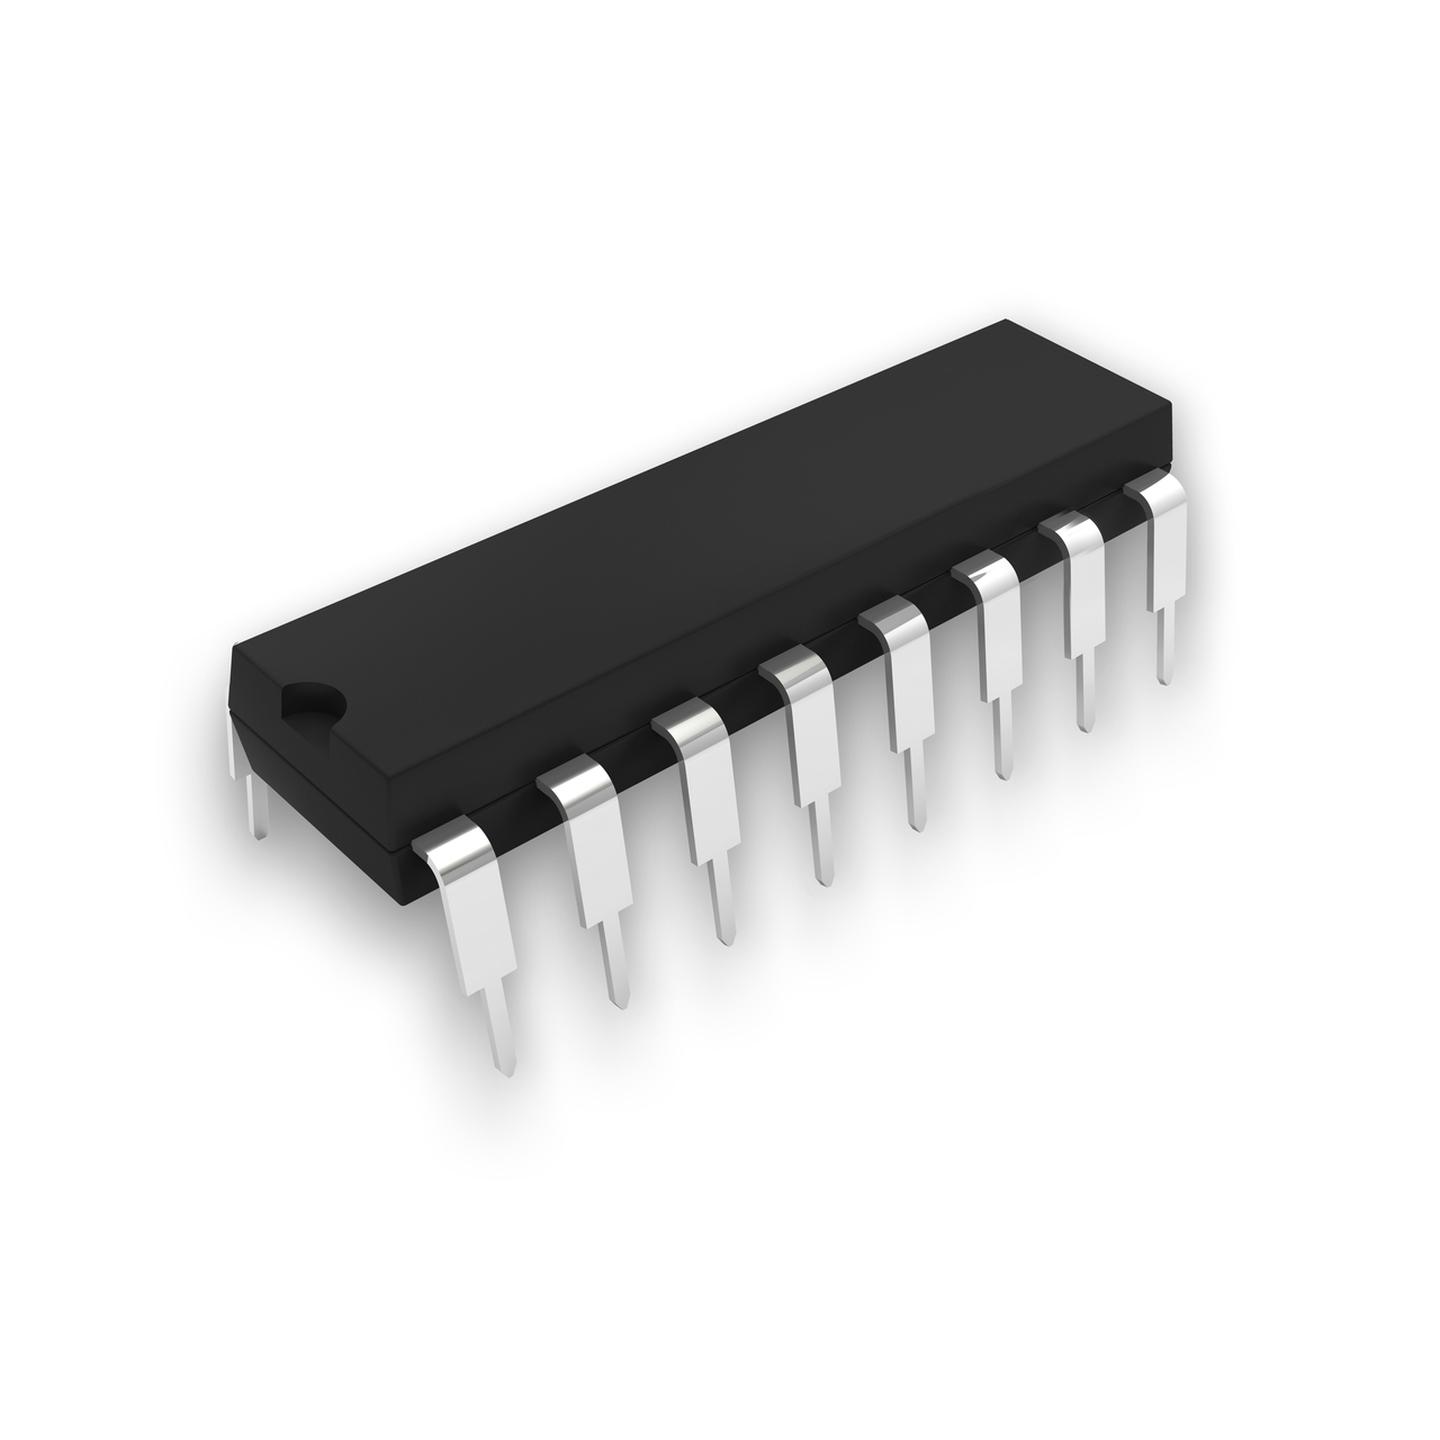 74LS157 Quad 2-input Multiplexer IC